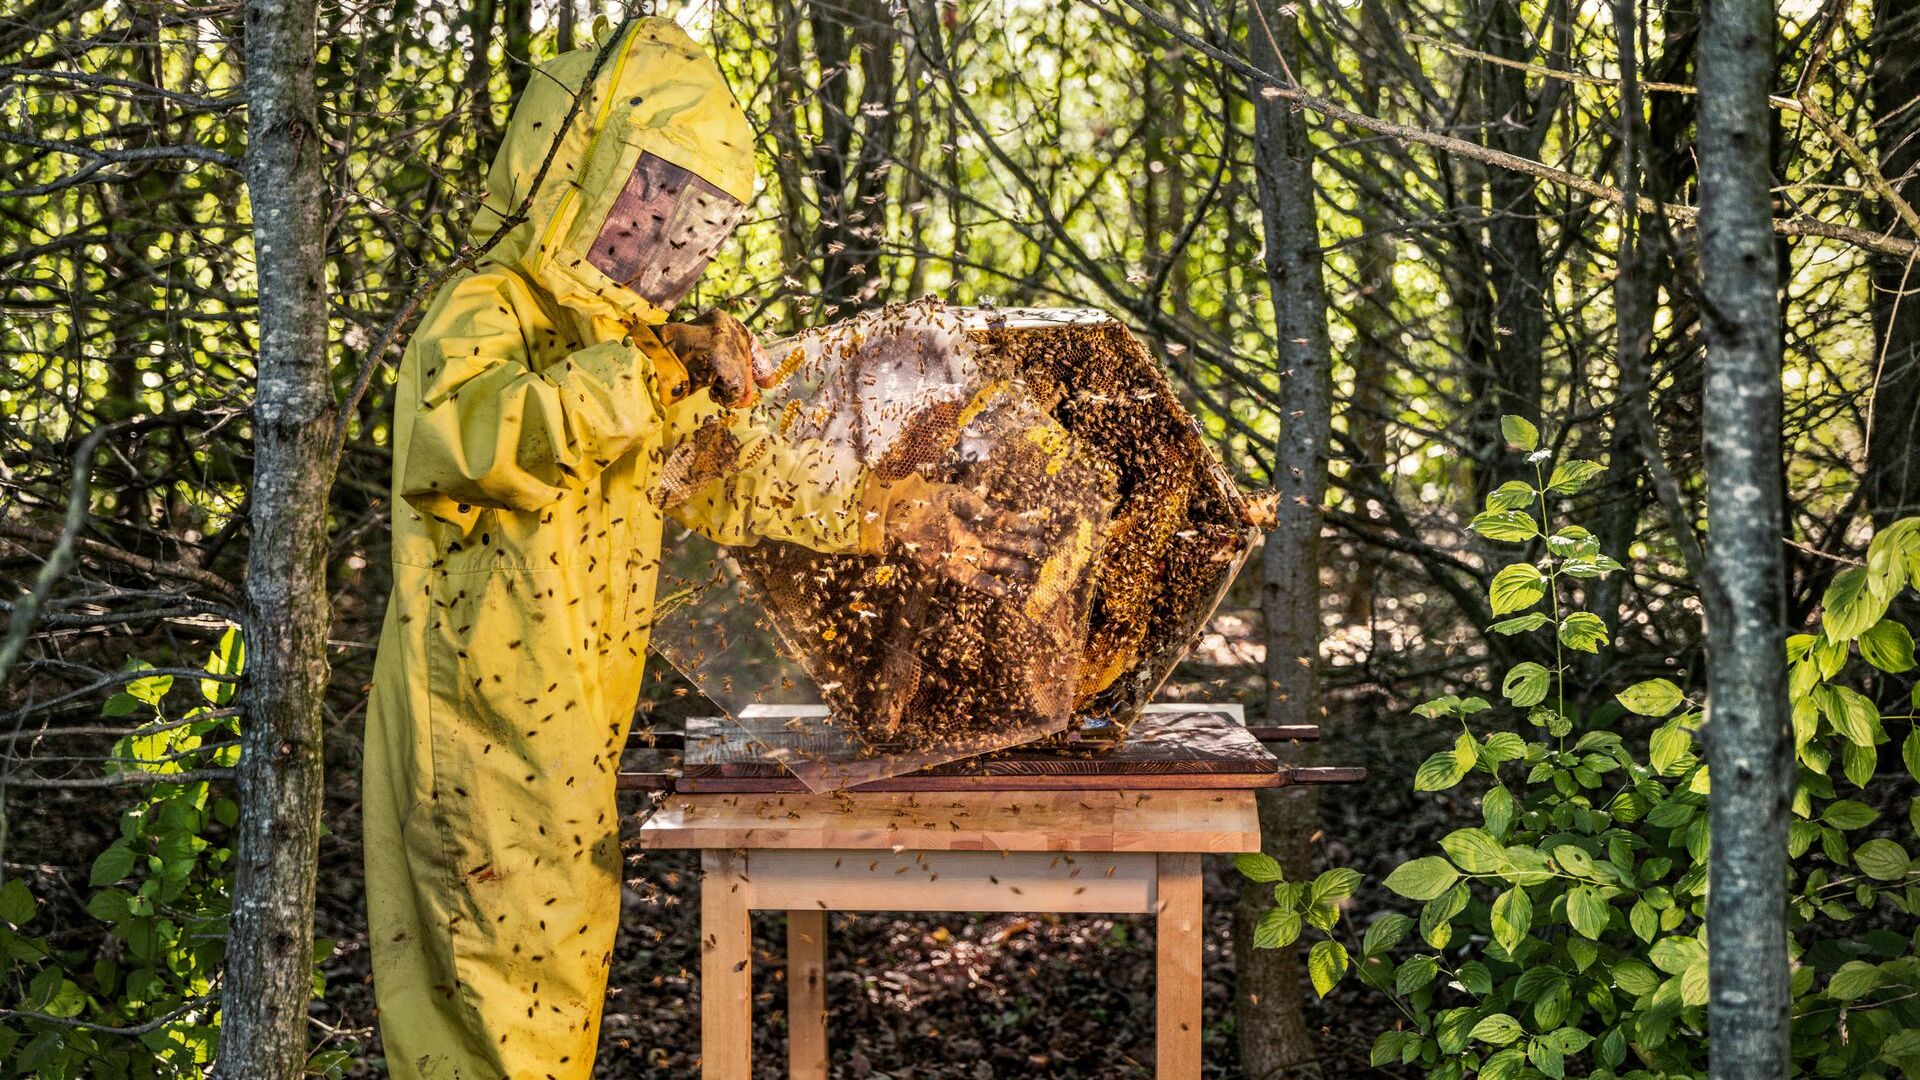 Automobili Lamborghini ha dato vita a progetti di biomonitoraggio con le api